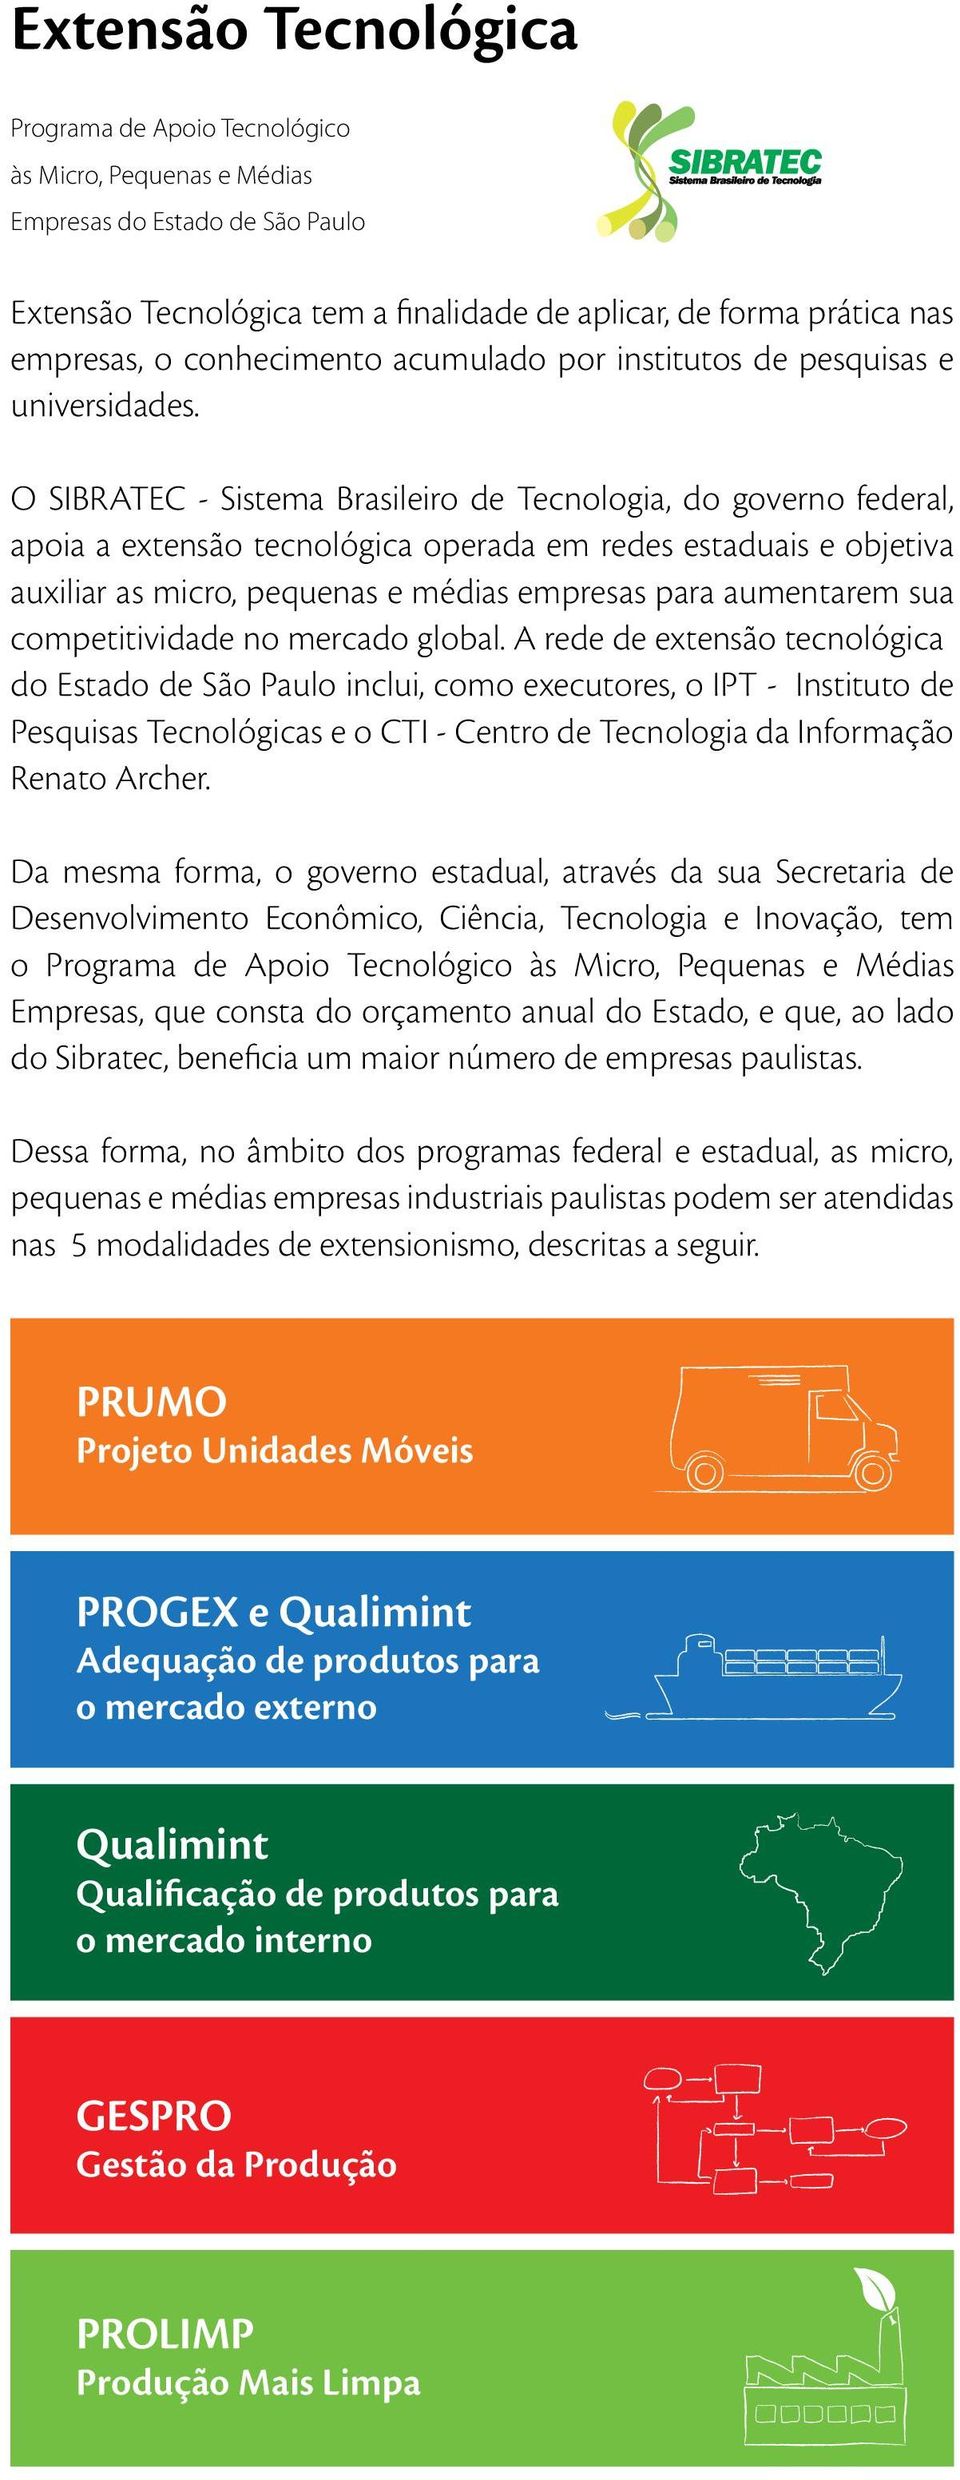 O SIBRATEC - Sistema Brasileiro de Tecnologia, do governo federal, apoia a extensão tecnológica operada em redes estaduais e objetiva auxiliar as micro, pequenas e médias empresas para aumentarem sua